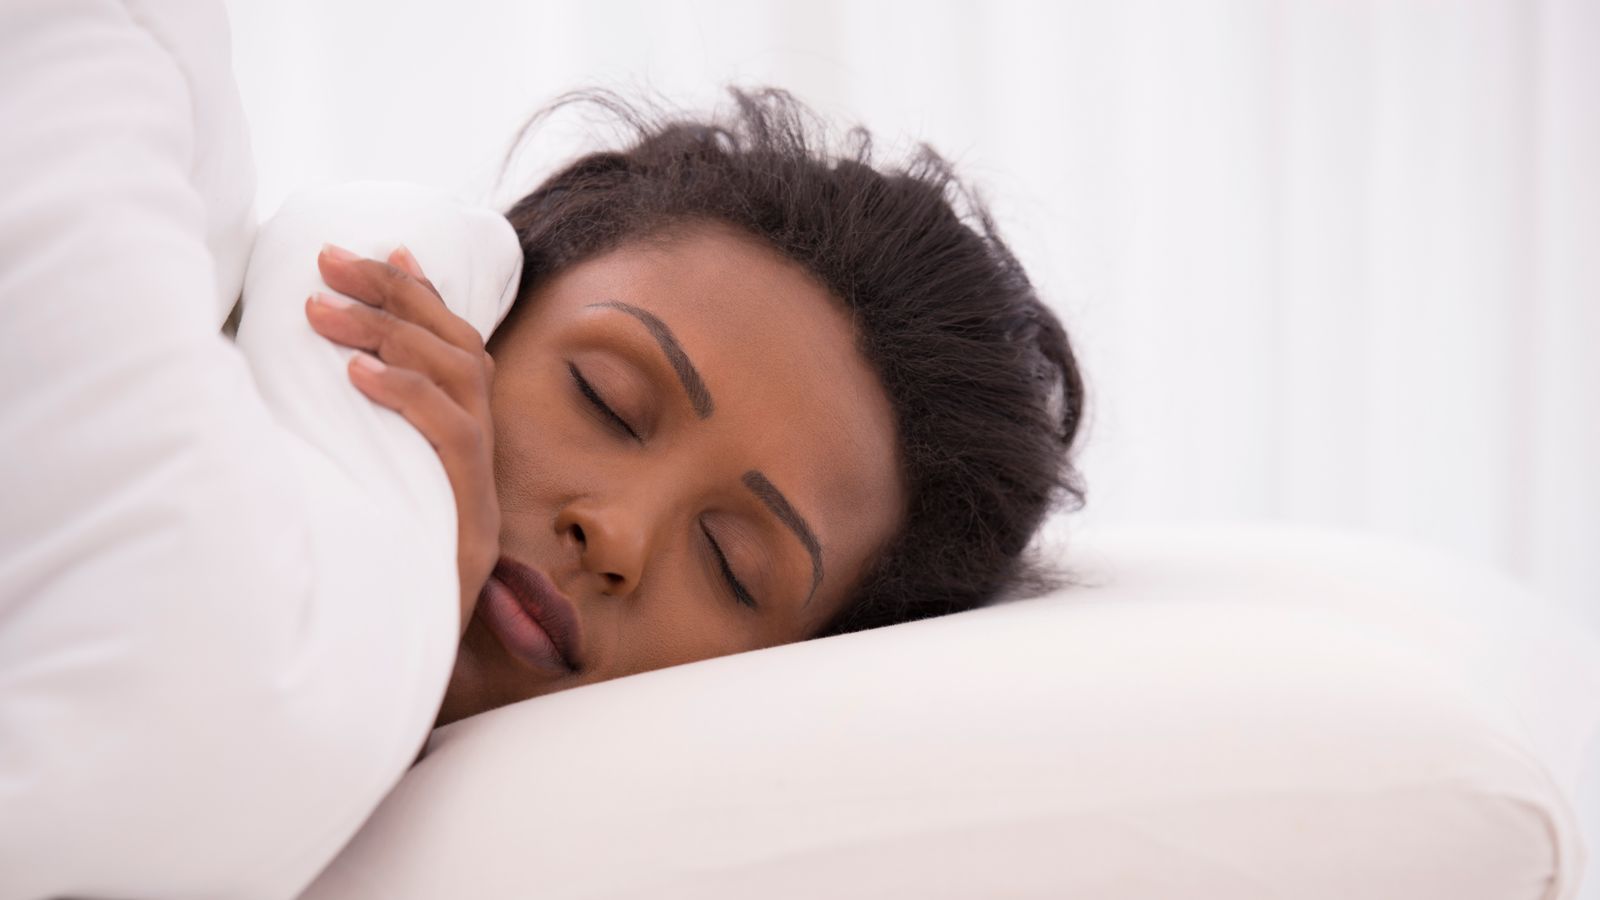 Les humains pourraient avoir besoin de plus de sommeil pendant l’hiver, selon une étude |  Nouvelles du monde